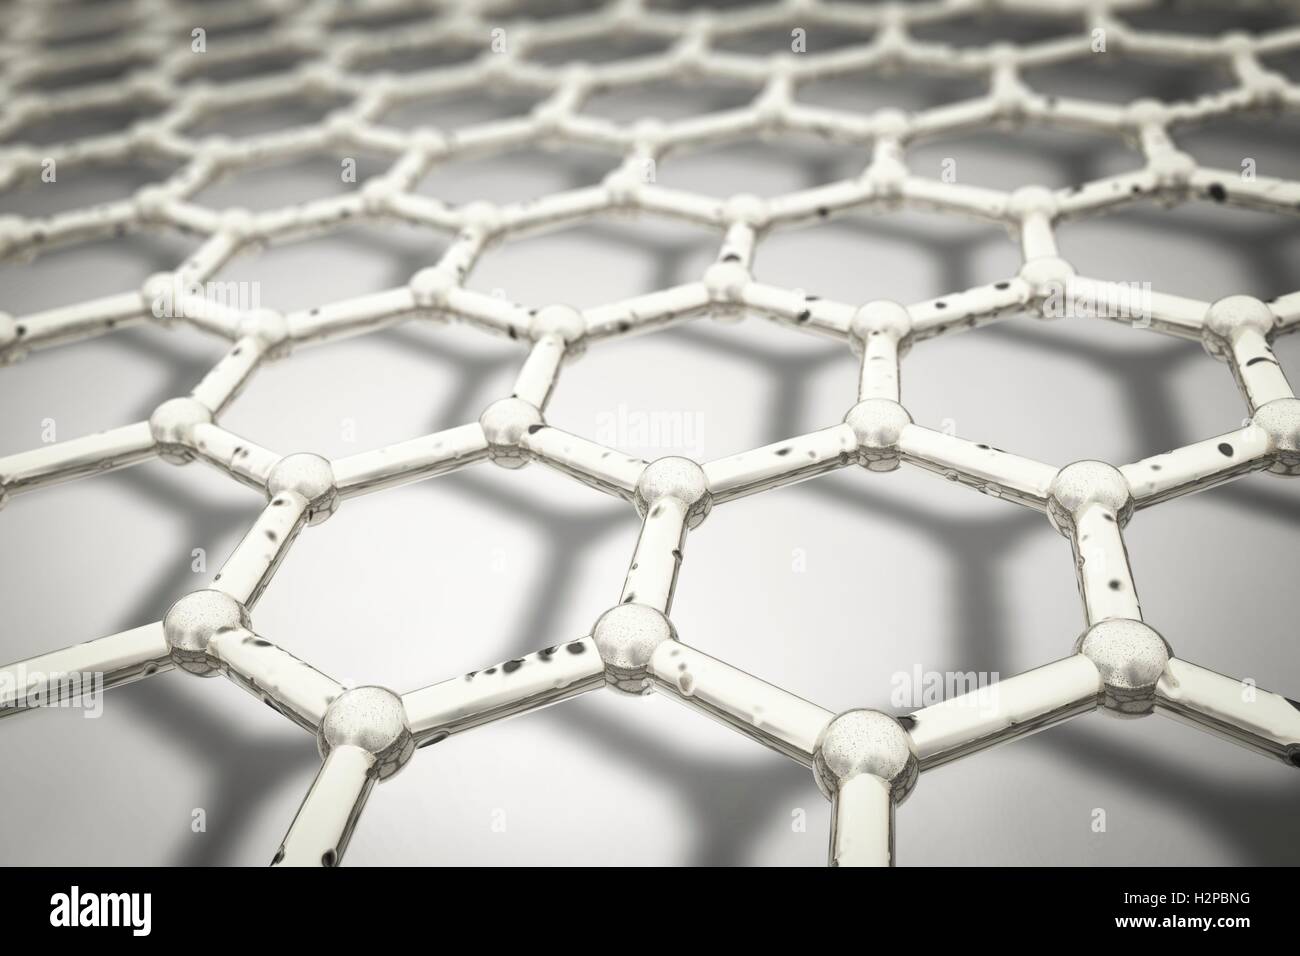 Graphen, Computer Bild. Nahaufnahme der molekularen Struktur von Graphen, eine einzelne Schicht aus Graphit. Es besteht aus Hexagonal angeordneten Kohlenstoffatomen (Kugeln) durch starke kovalente Bindungen (Stäbe) verbunden. Graphen ist sehr stark und flexibel. Stockfoto